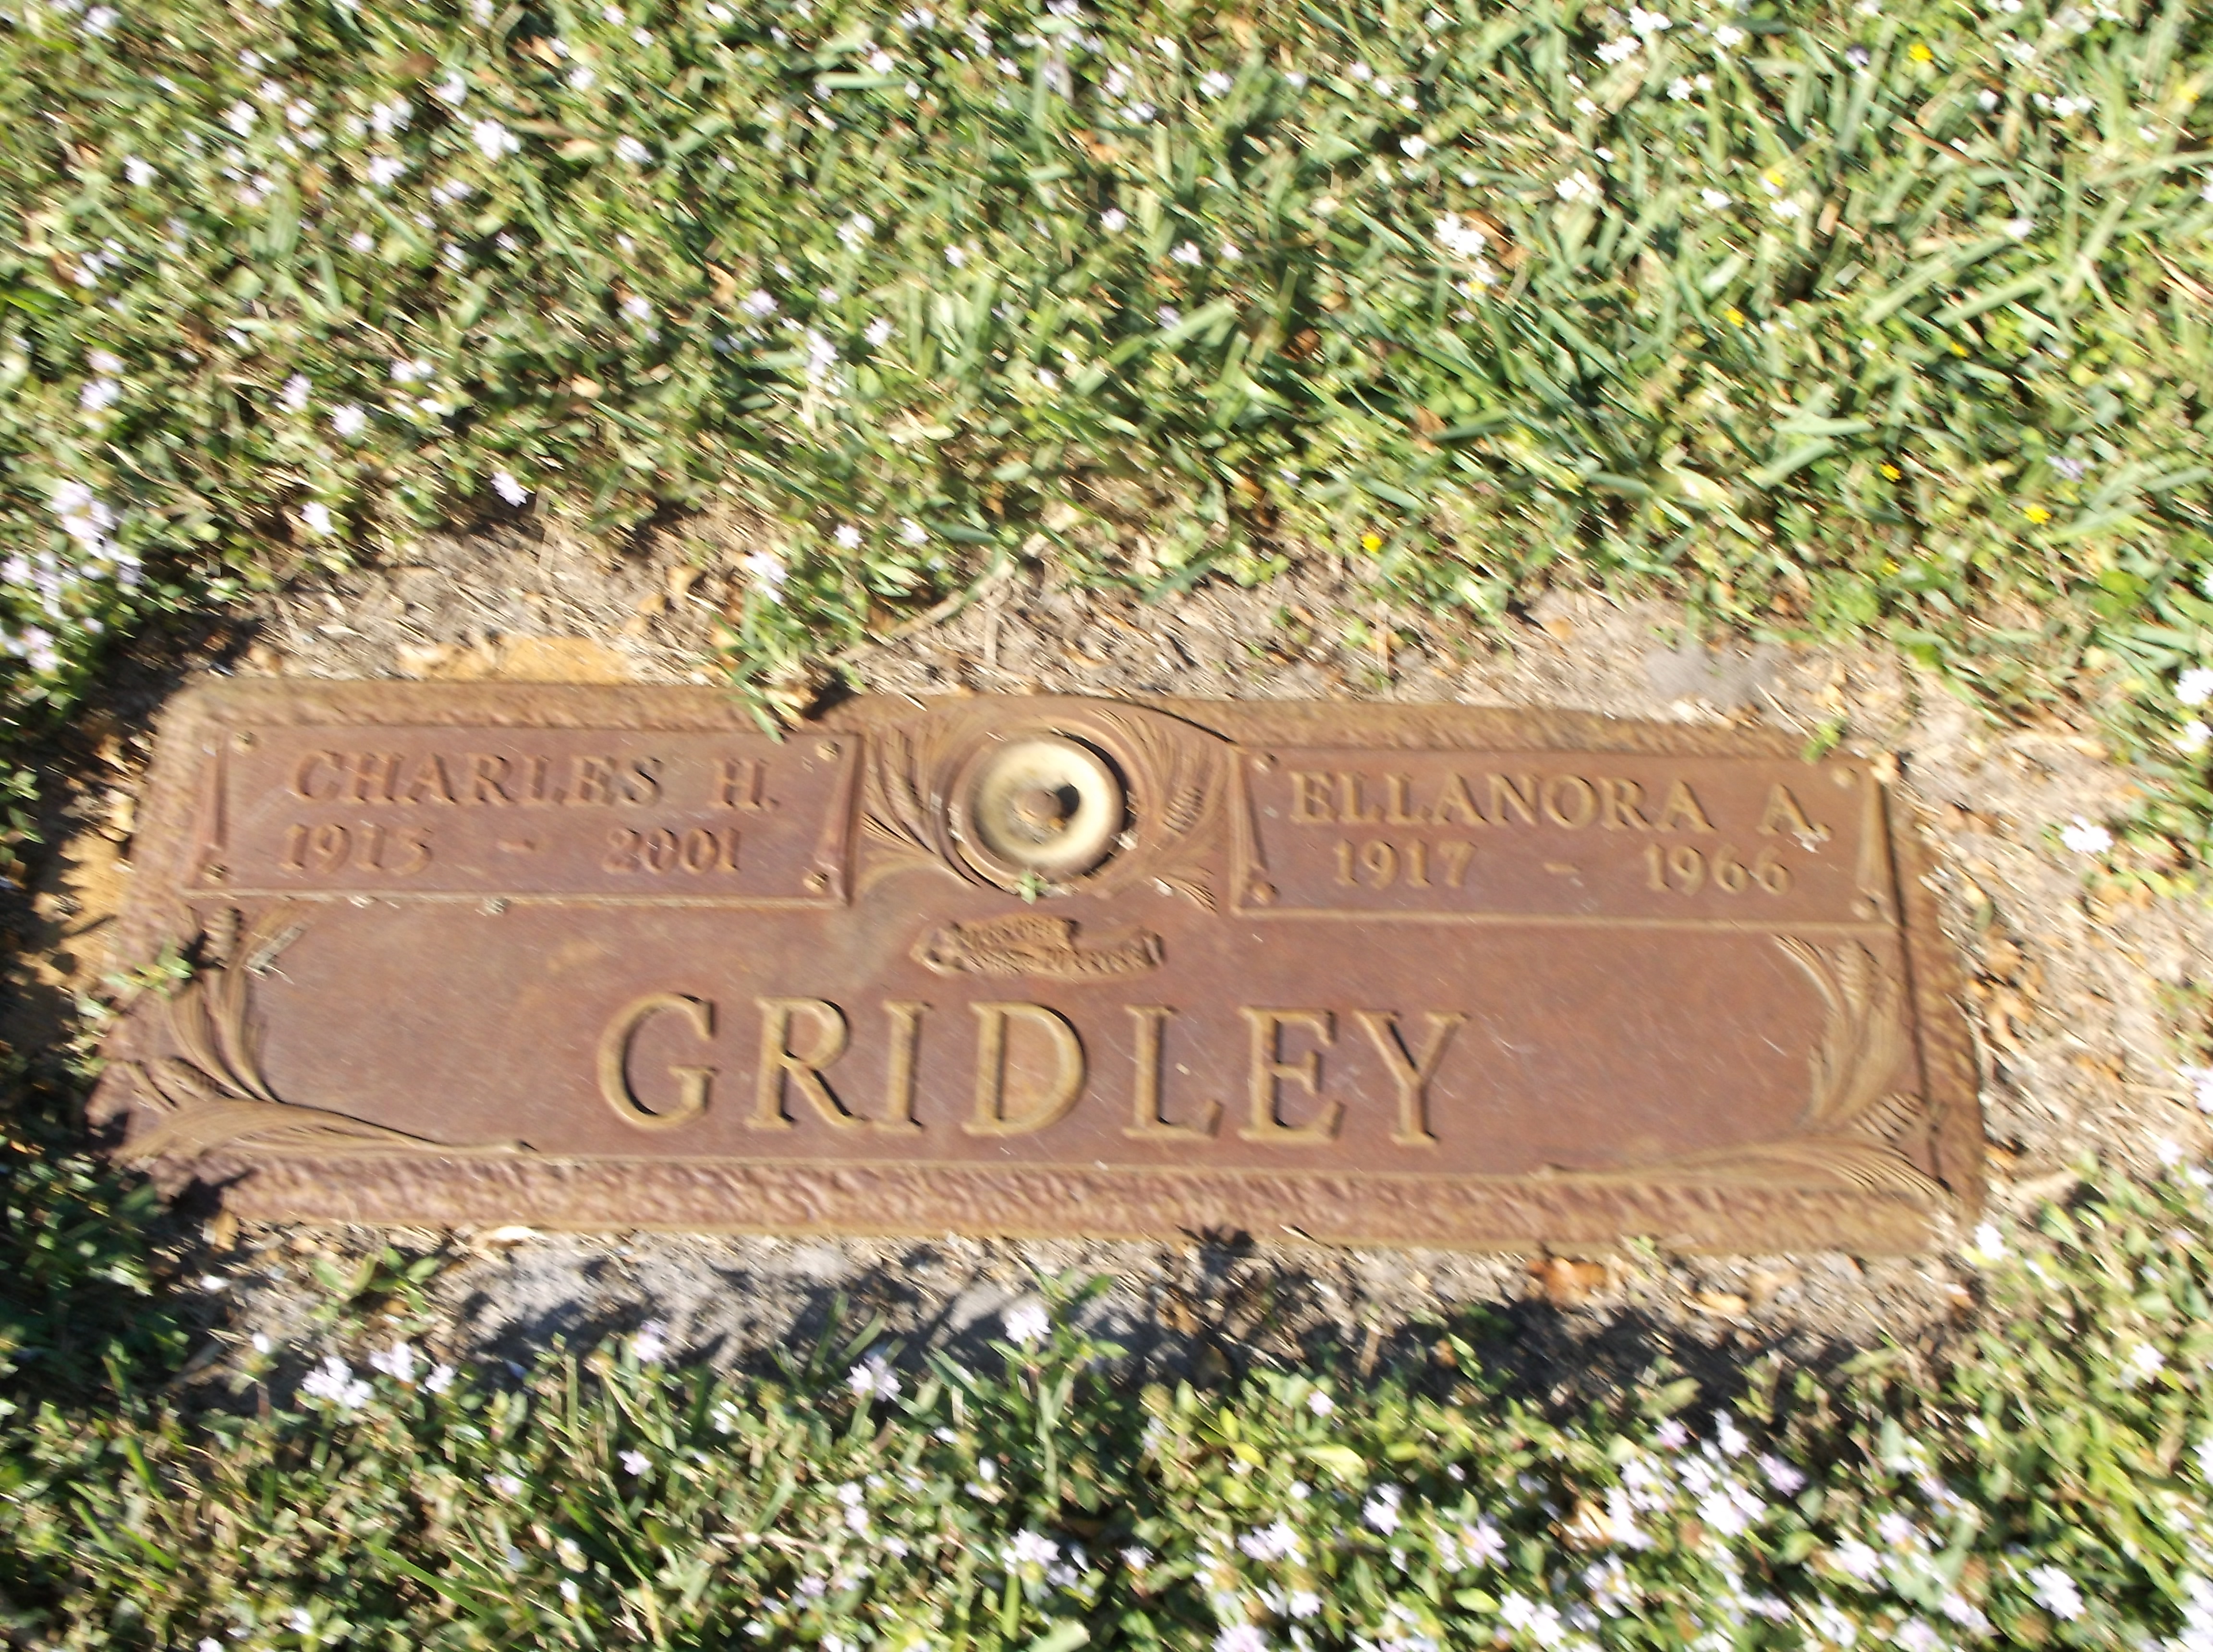 Charles H Gridley